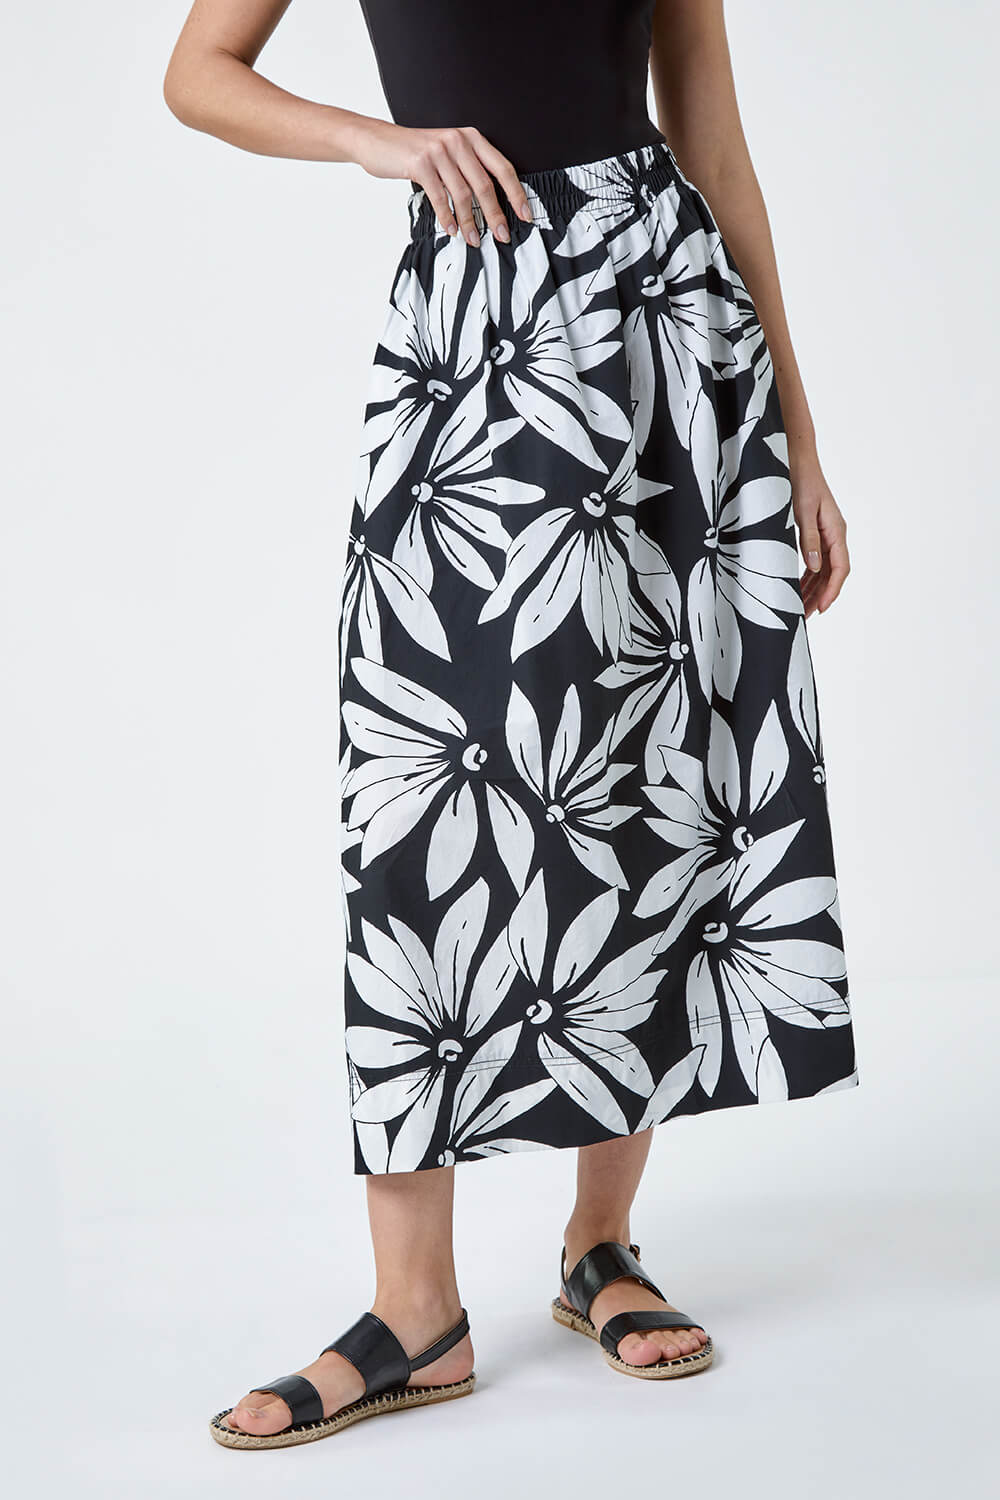 Black Floral Cotton Poplin Pocket Skirt, Image 4 of 5